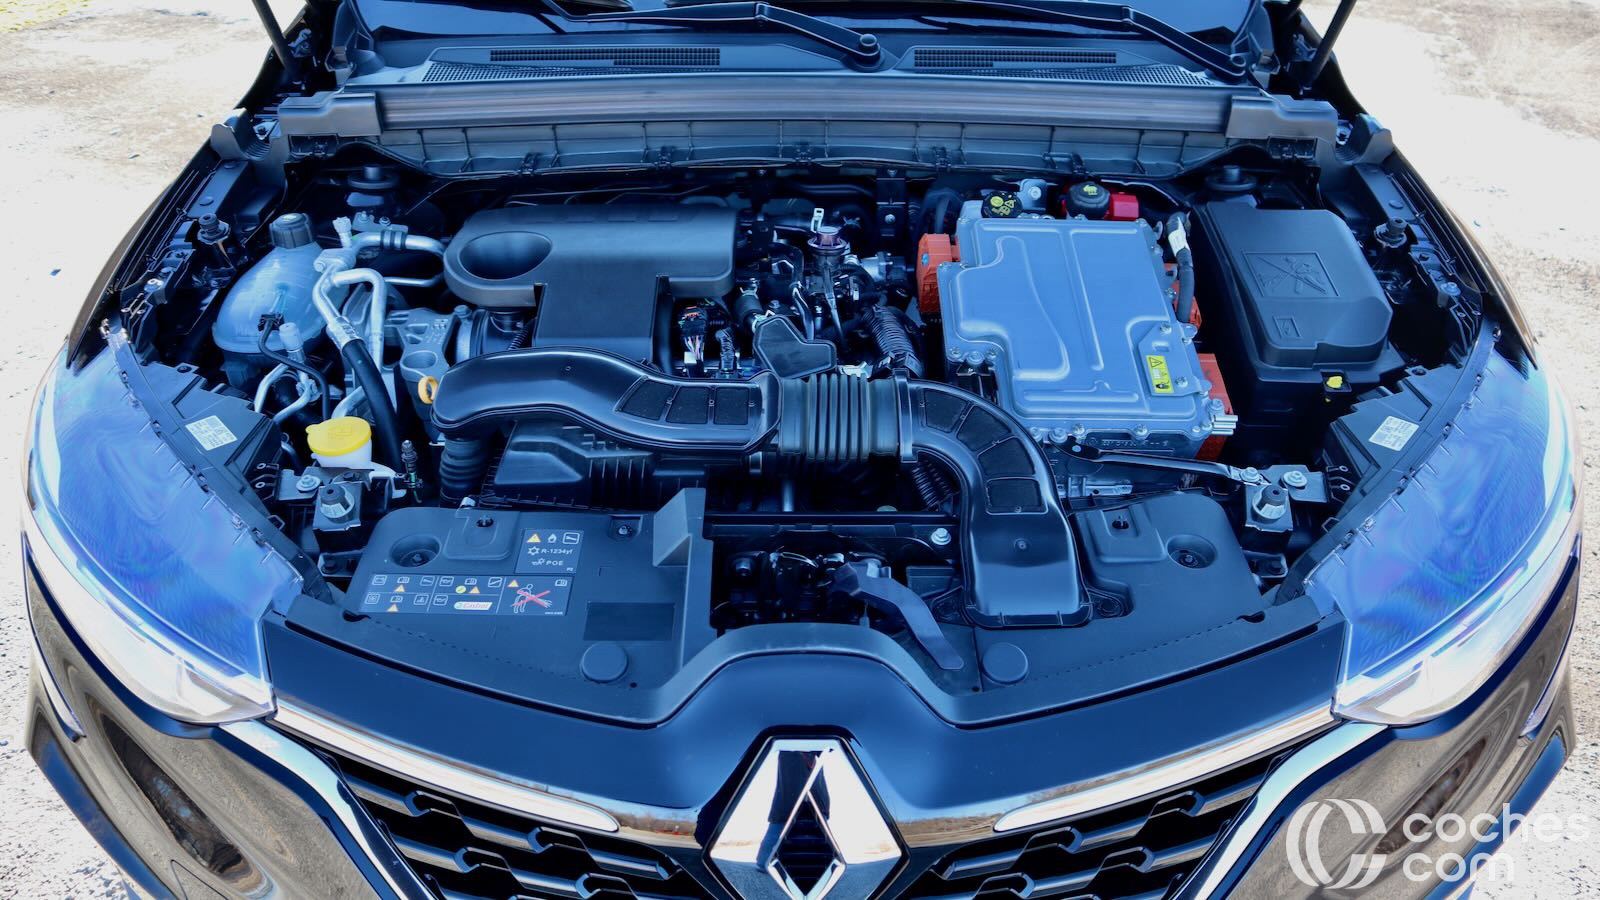 Renault Arkana Zen: características, motores y precios